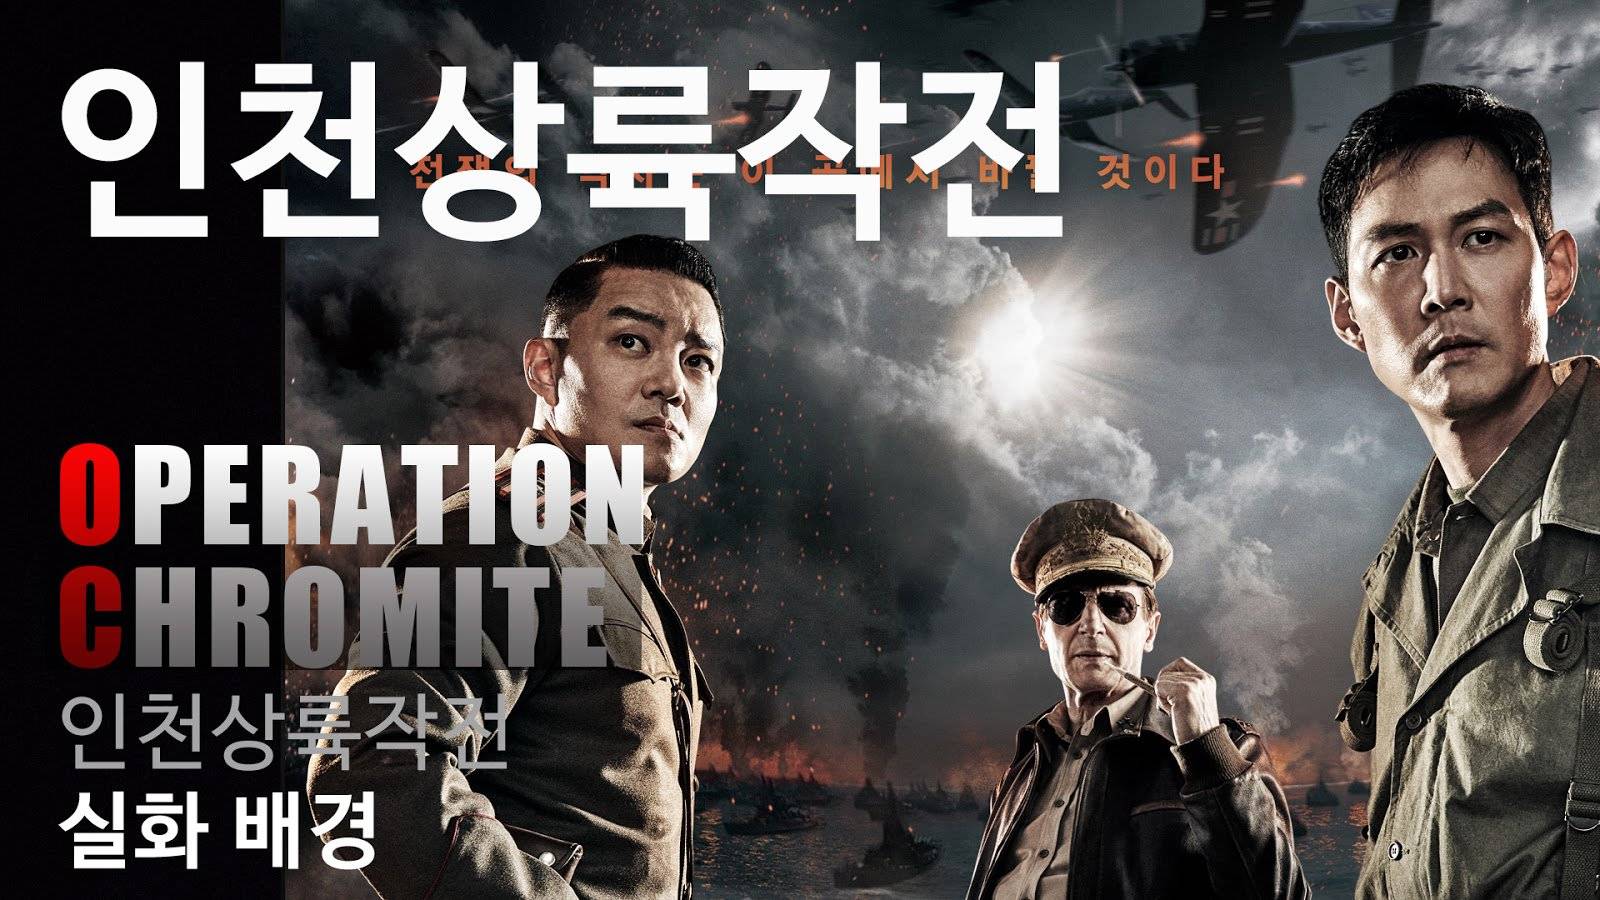 Xem Phim Trận Đánh Incheon, Operation Chromite 2016